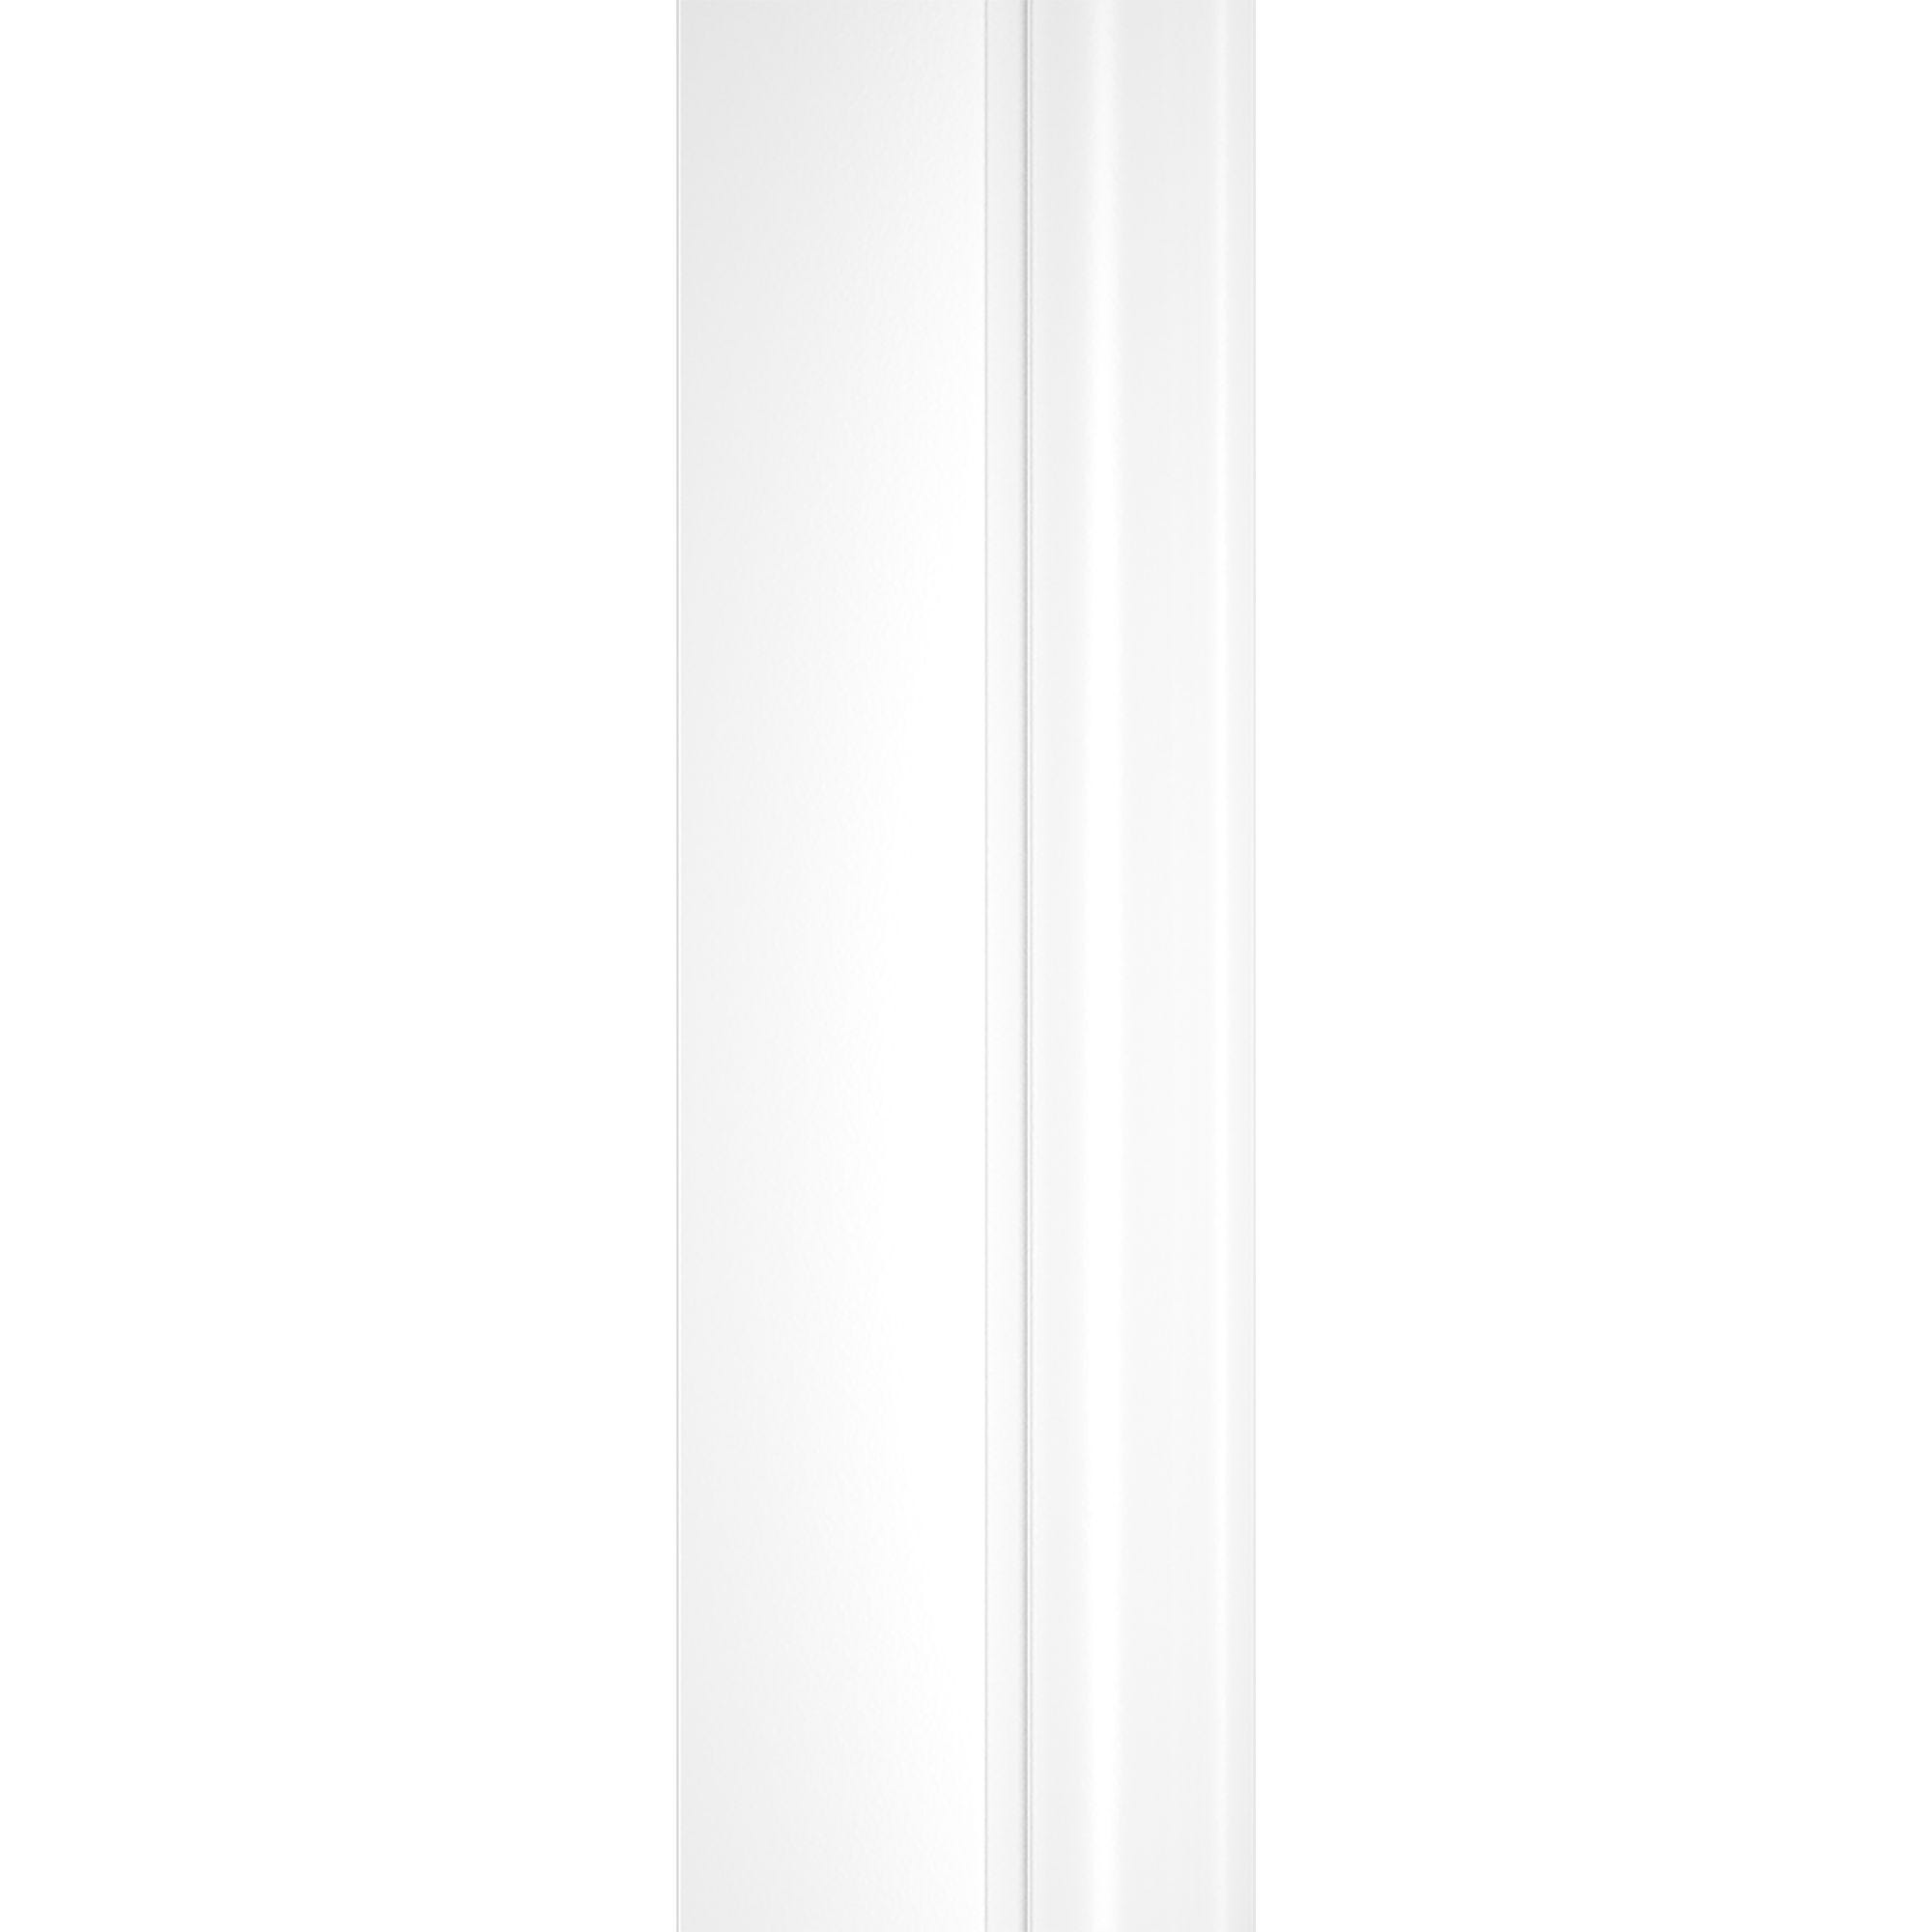 Schulte porte de douche 2 battants, porte de douche battante en niche, 90 x 180 cm, verre 5 mm transparent, blanc, traitement anticalcaire, Sunny 3